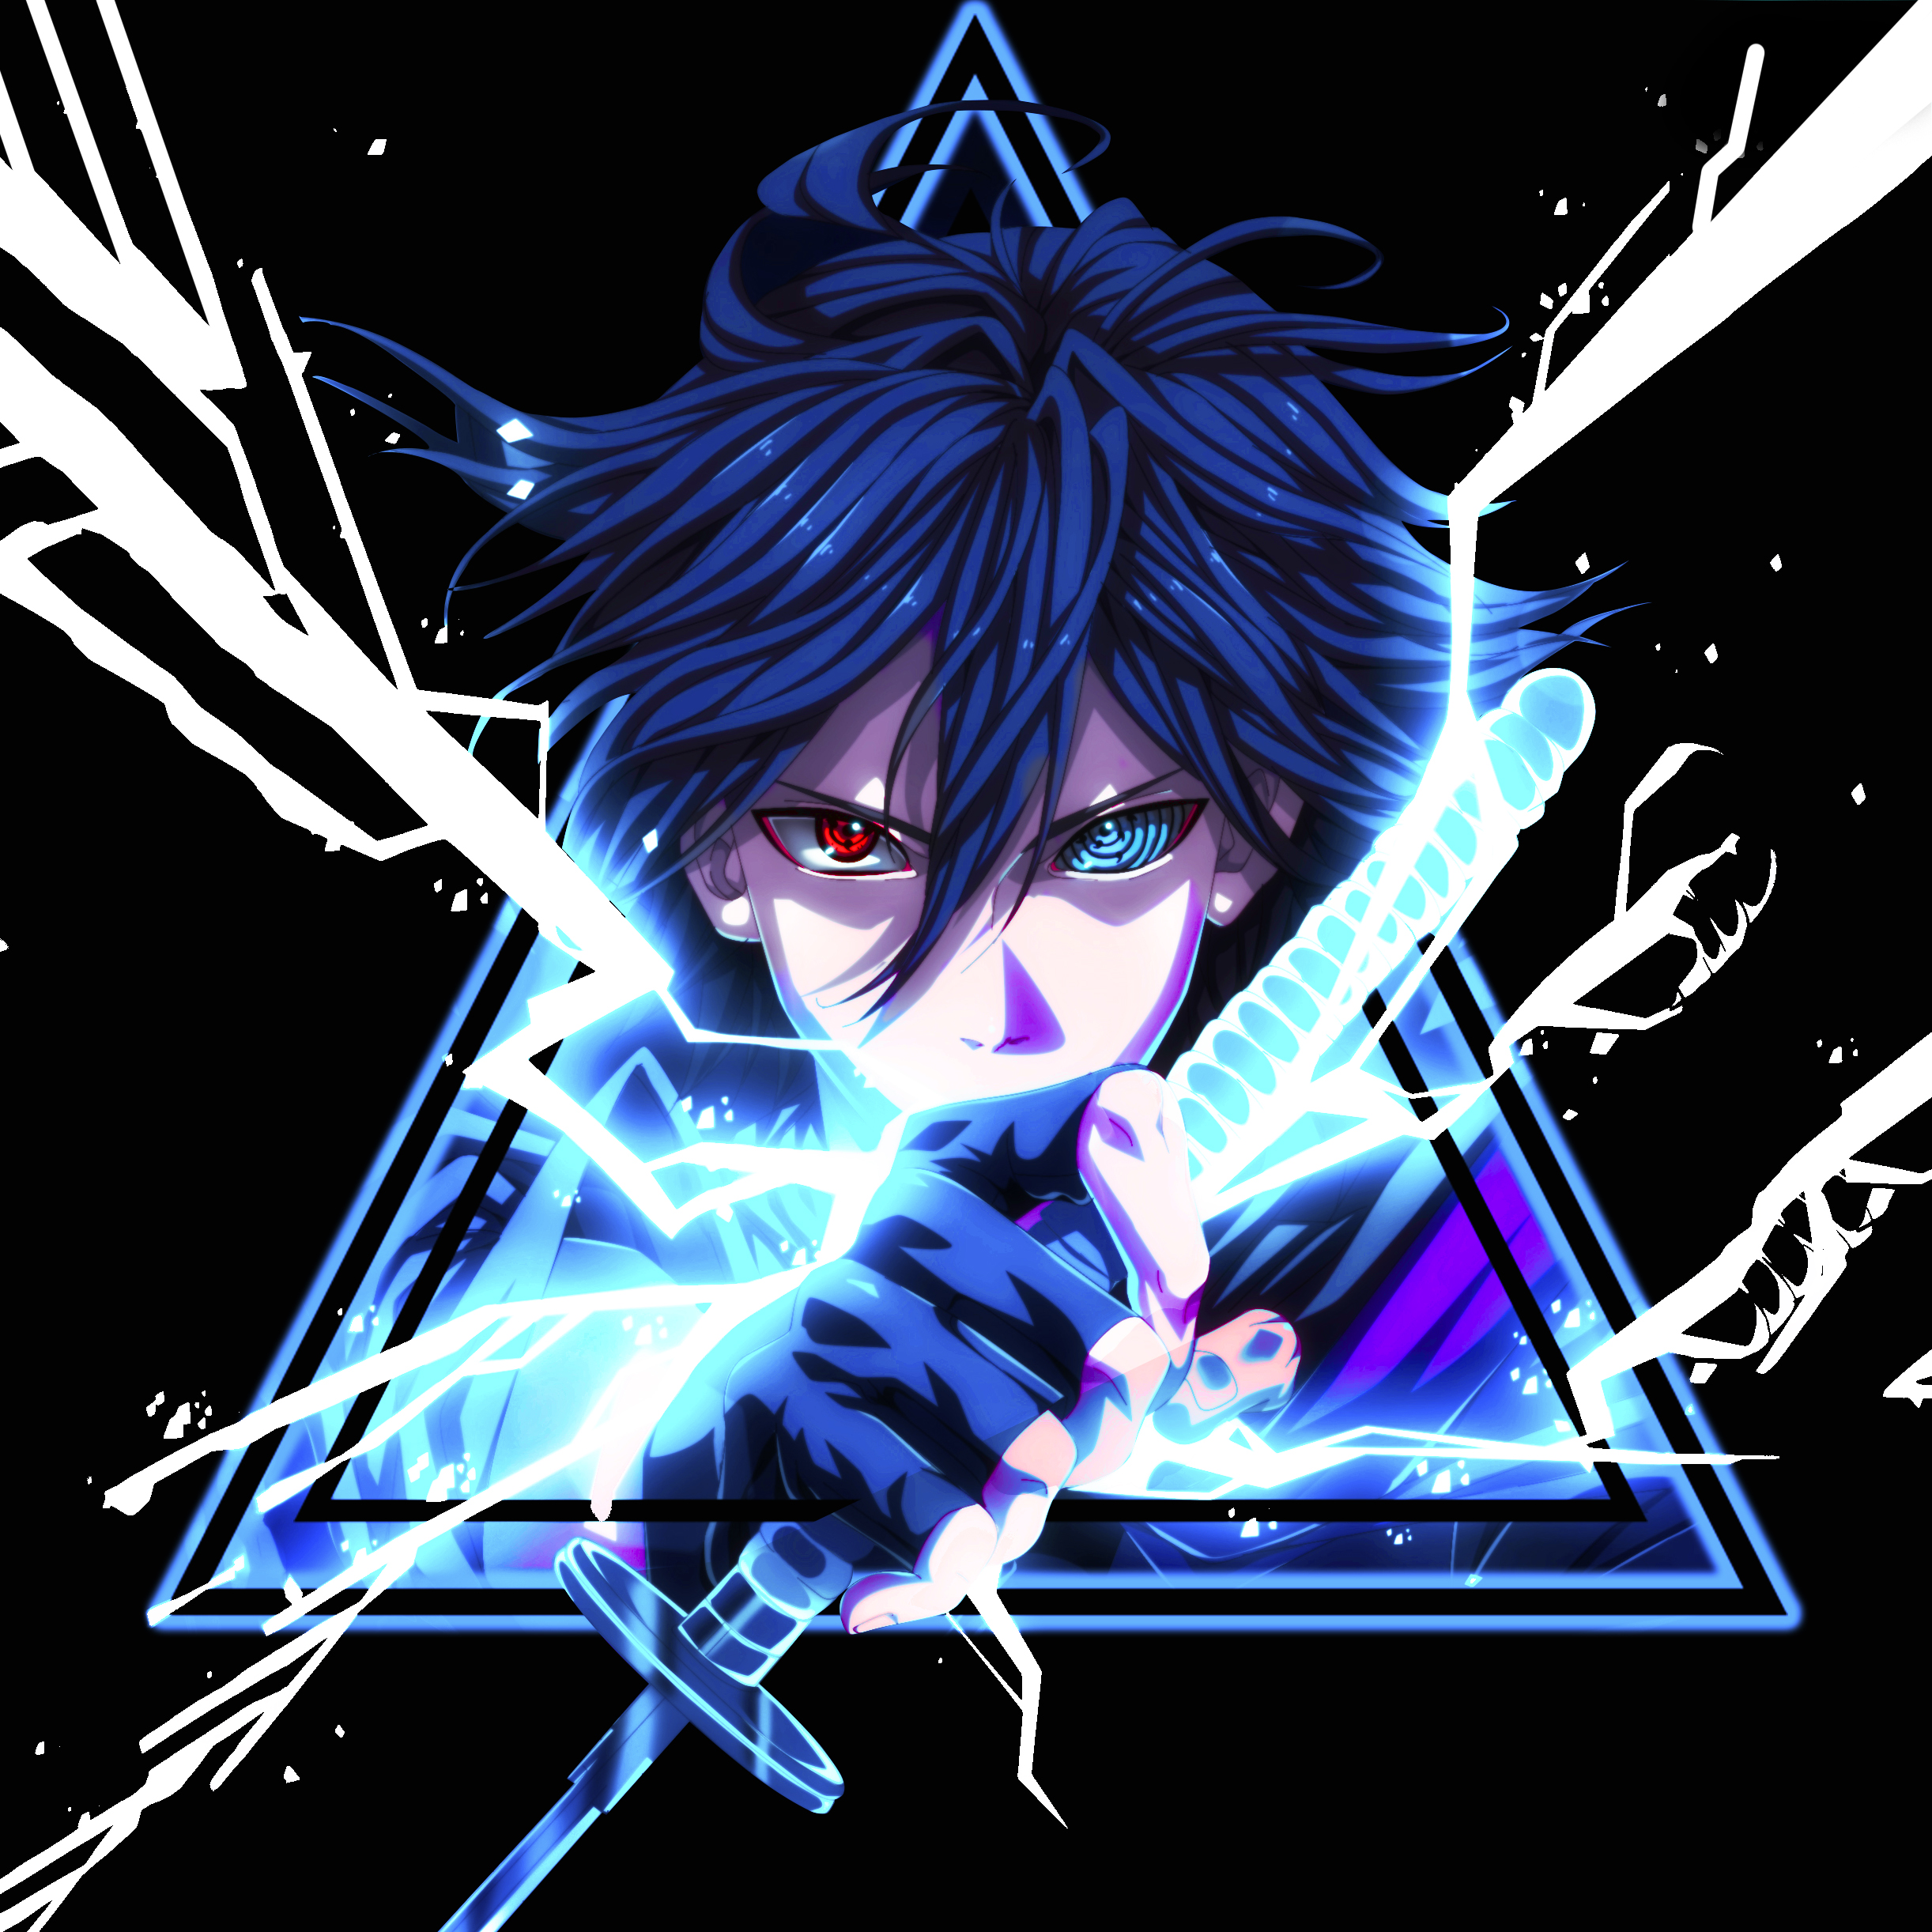 Uchiha Clan Uchiha Sasuke Digital Anime Heterochromia Looking At Viewer Blue Hair Sword Triangle Sim Wallpaper:2444x2444